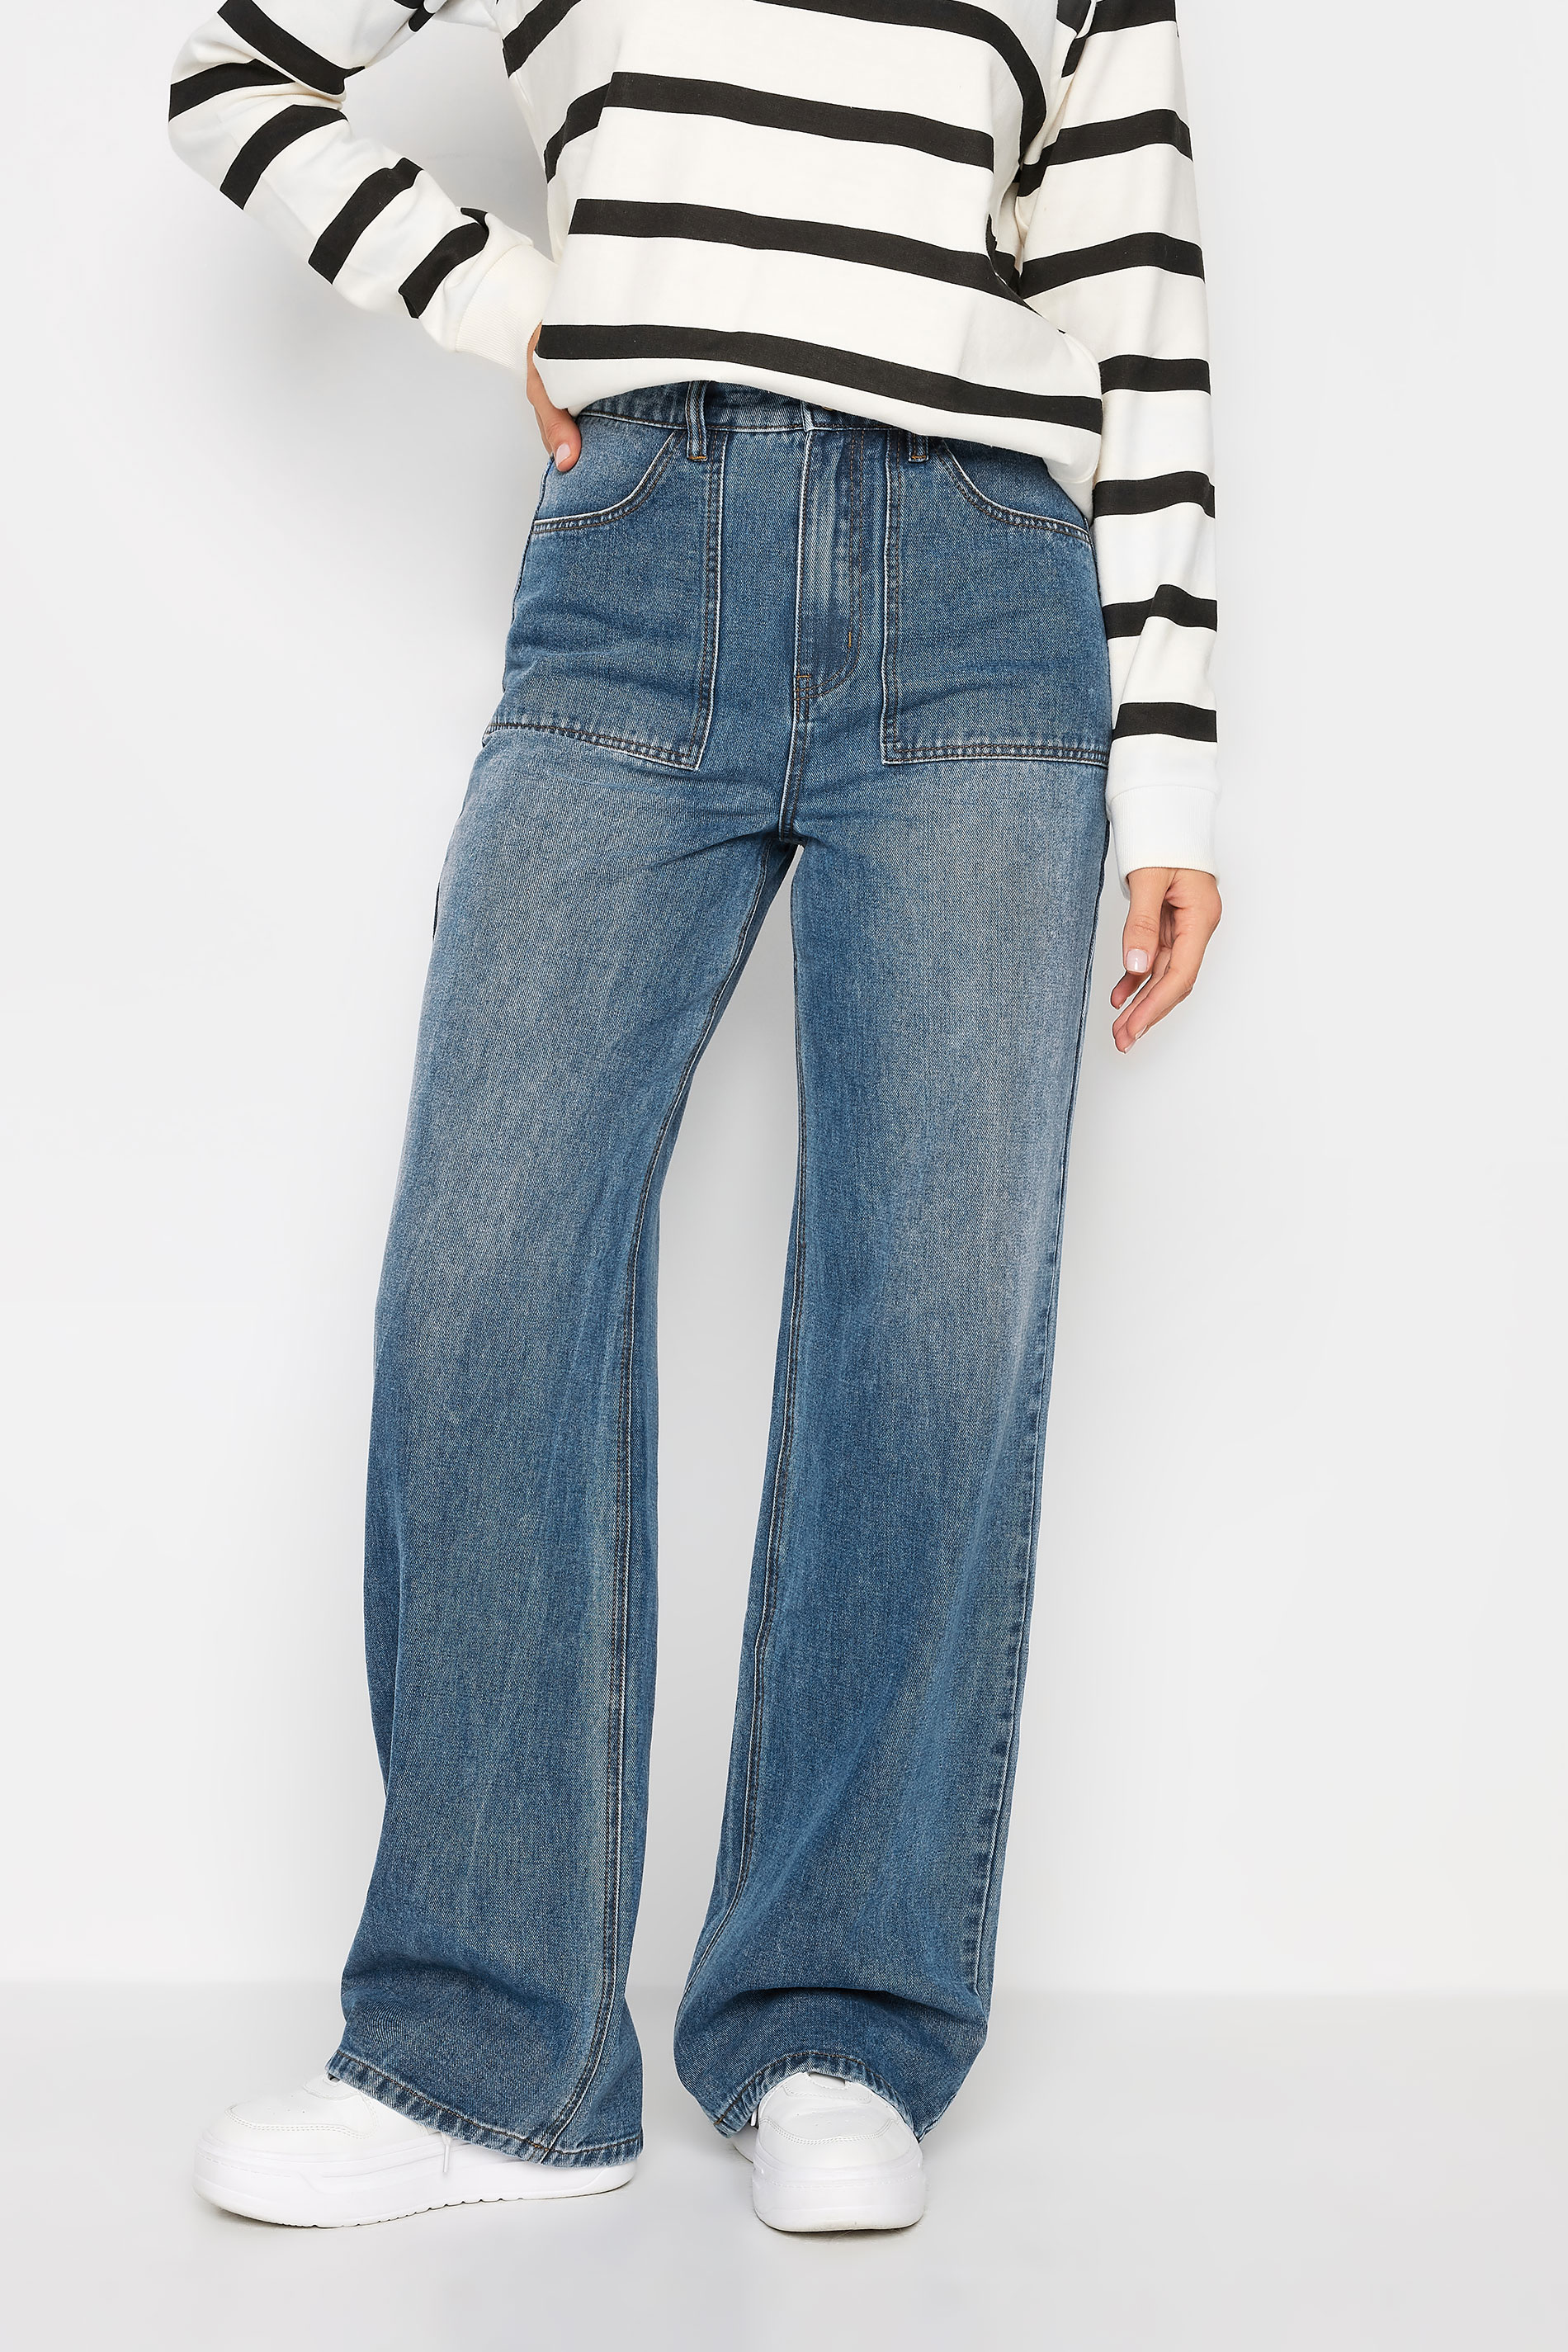 LTS Tall Womens Blue Wide Leg High Waisted Jeans | Long Tall Sally  1